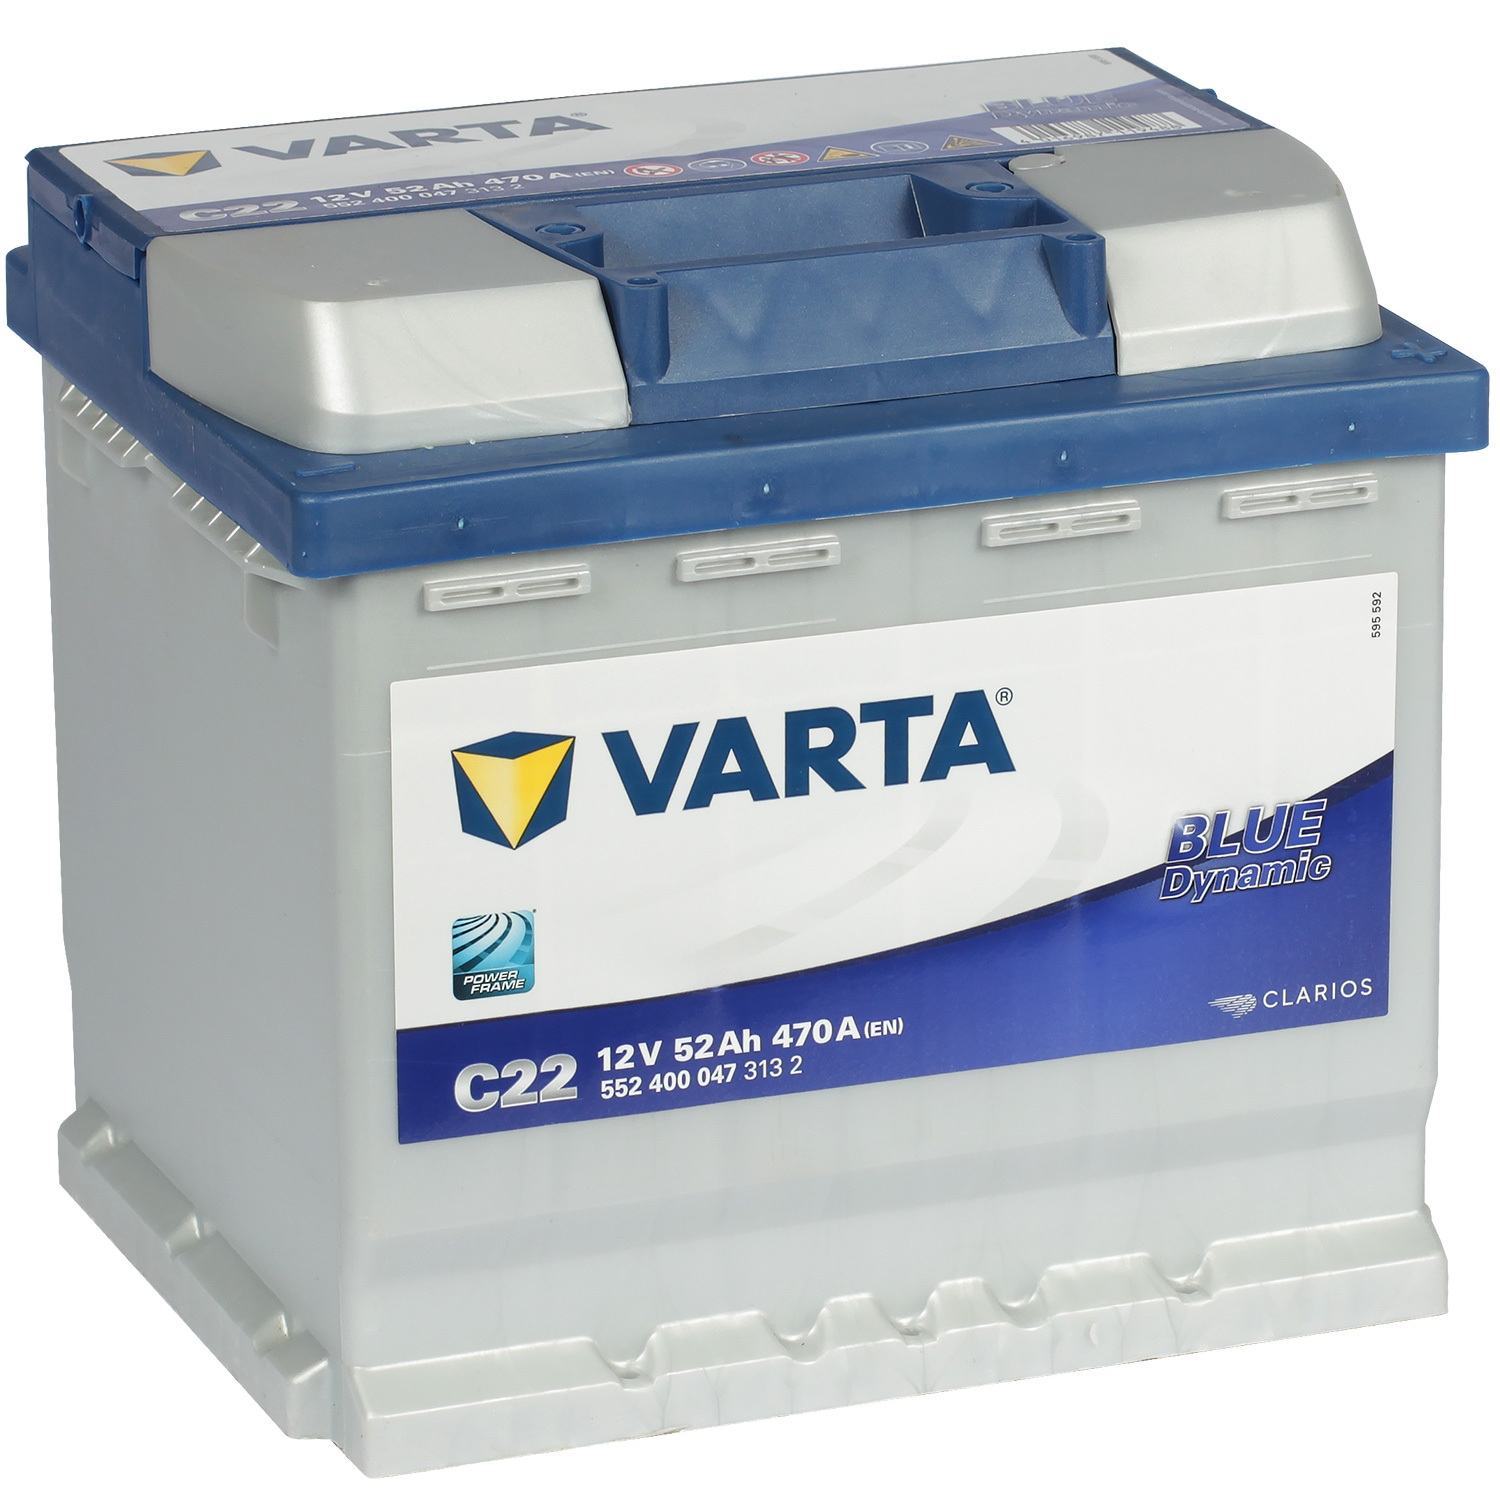 Varta Автомобильный аккумулятор Varta Blue Dynamic C22 52 Ач обратная полярность L1 varta автомобильный аккумулятор varta 72 ач обратная полярность lb3